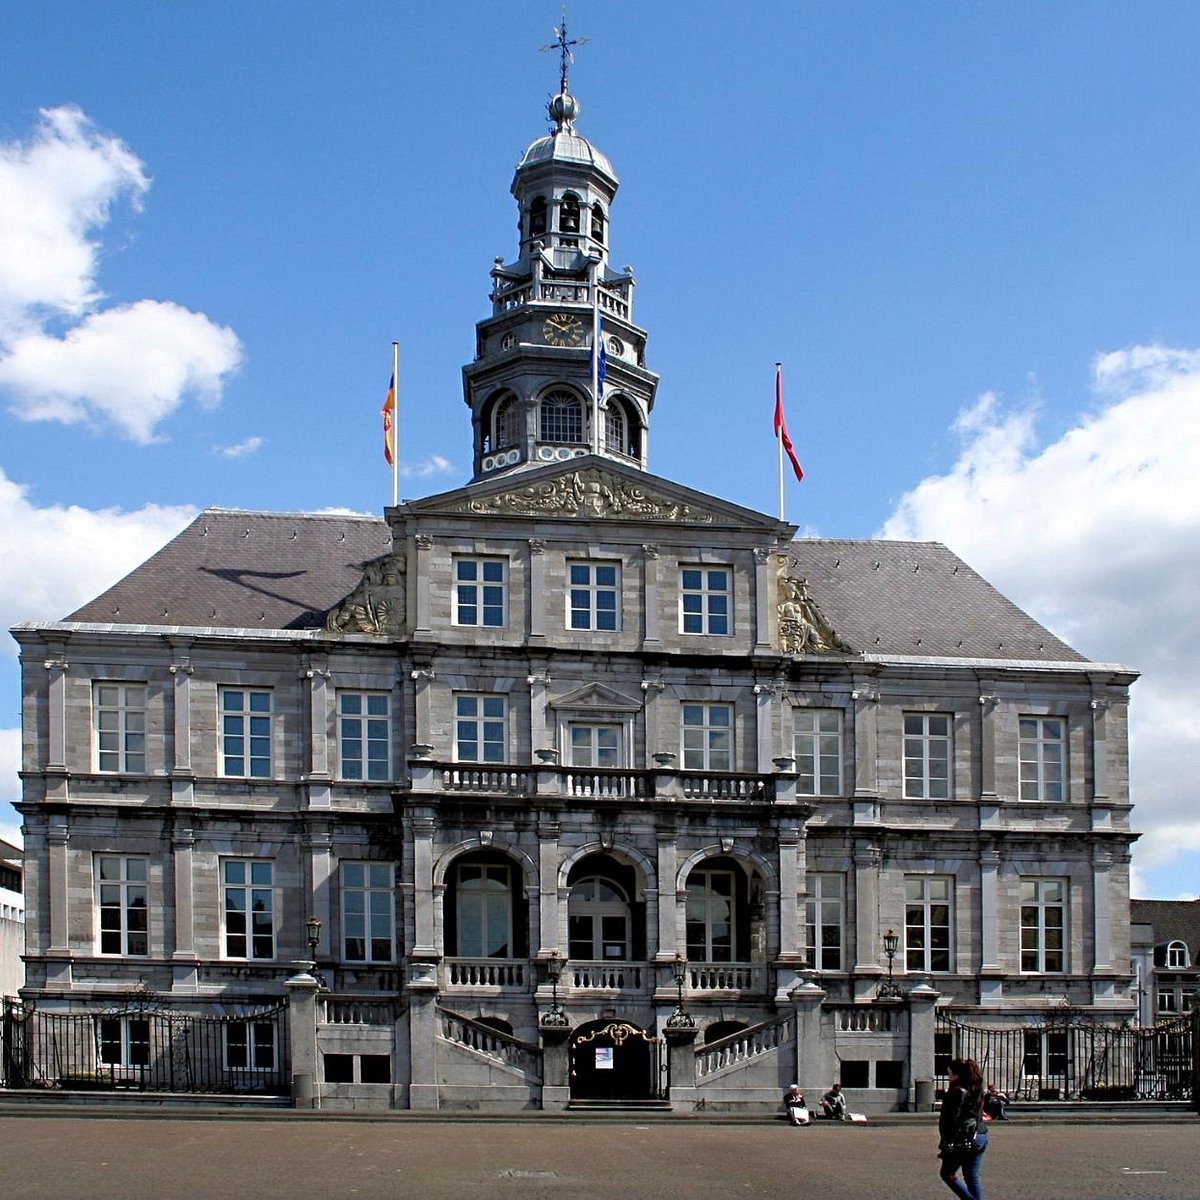 huurwoning Maastricht, Krijg voorrang op een huurwoning in Maastricht